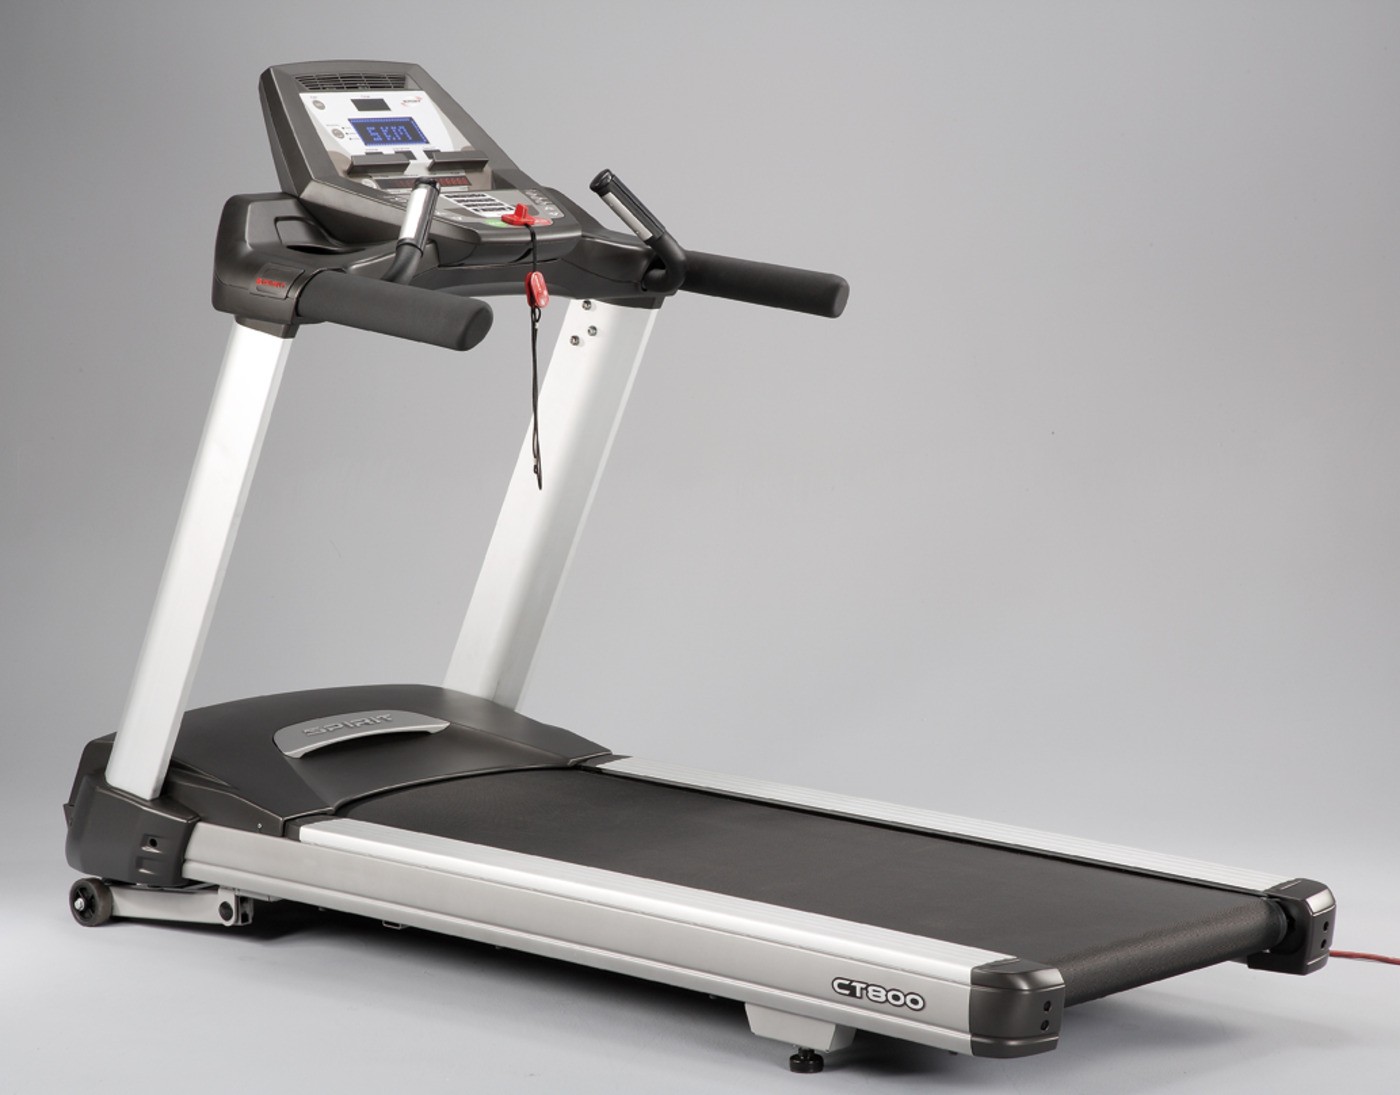 Fitness CT800 Club Series Treadmill